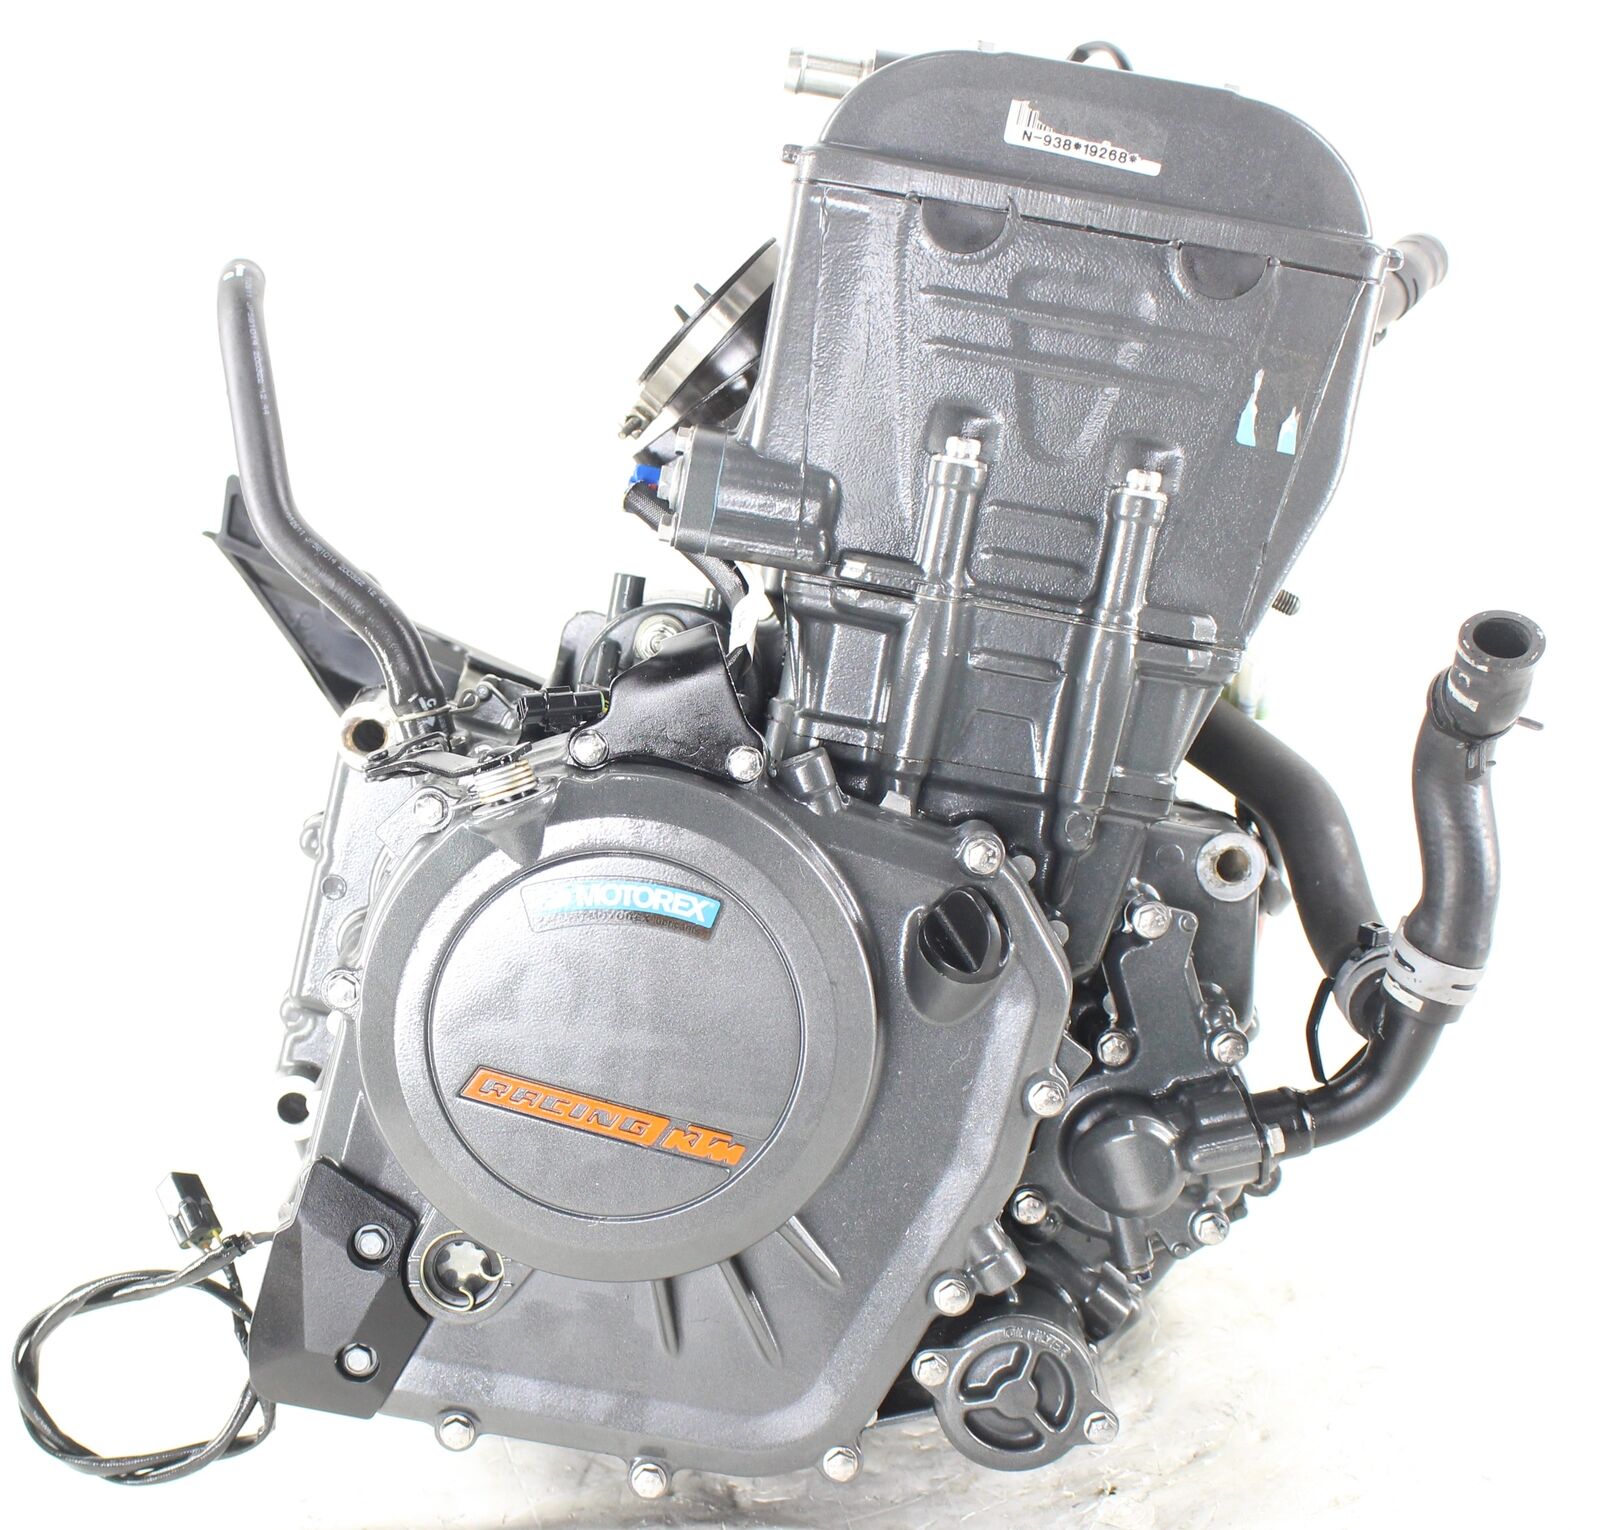 2022 Ktm 390 Duke Engine Motor Running Strong Tested 2kmiles 